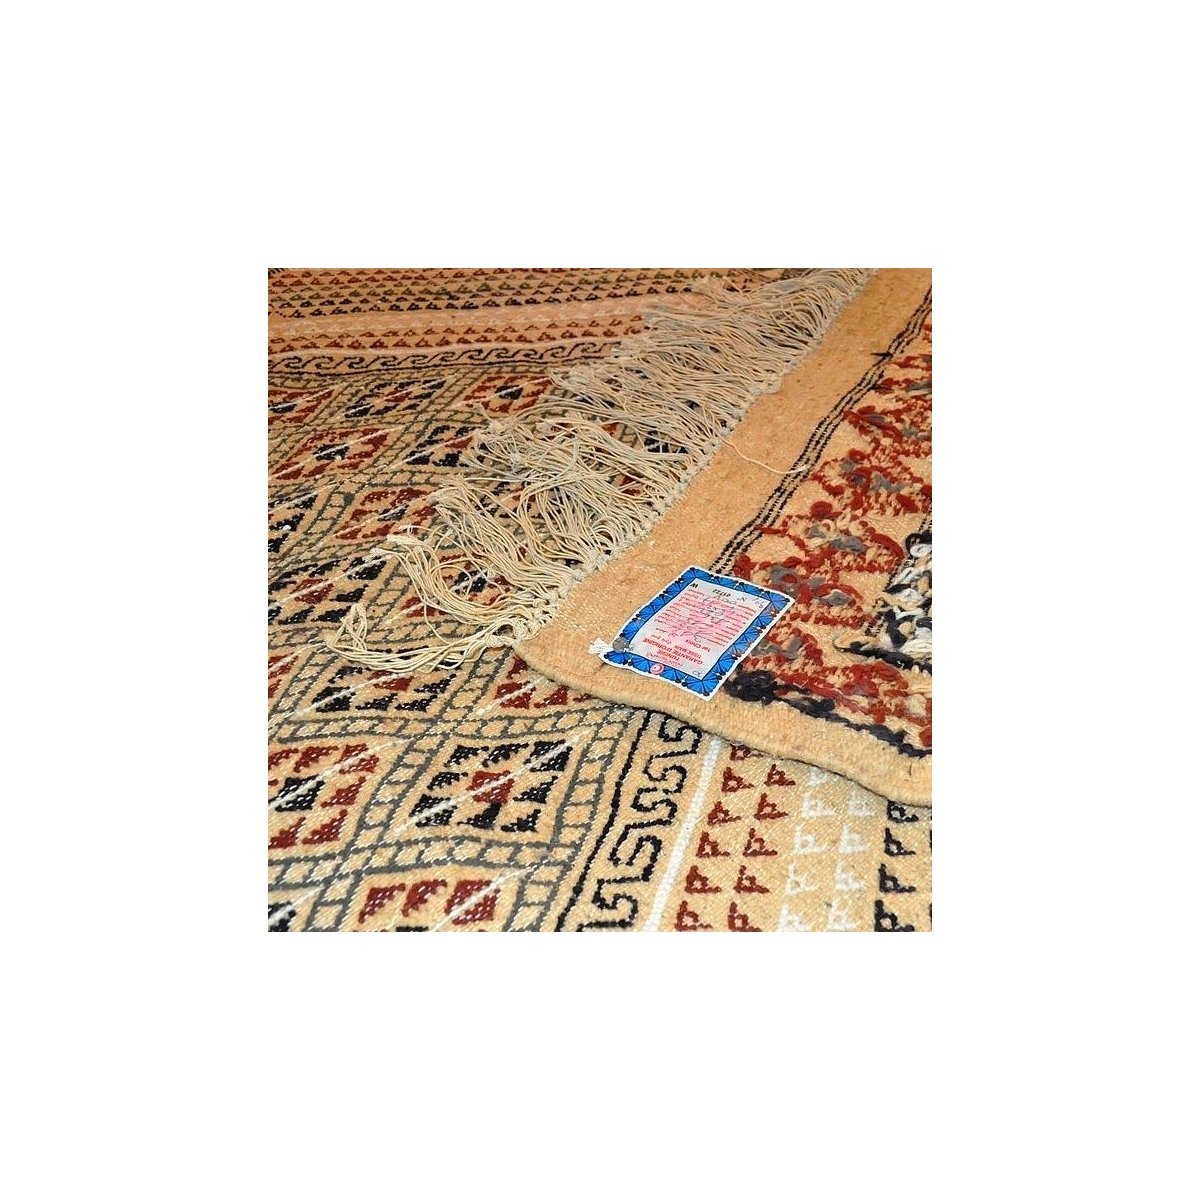 Berber carpet Large Rug Margoum Ledna 200x310 Beige (Handmade, Wool) Tunisian margoum rug from the city of Kairouan. Rectangular